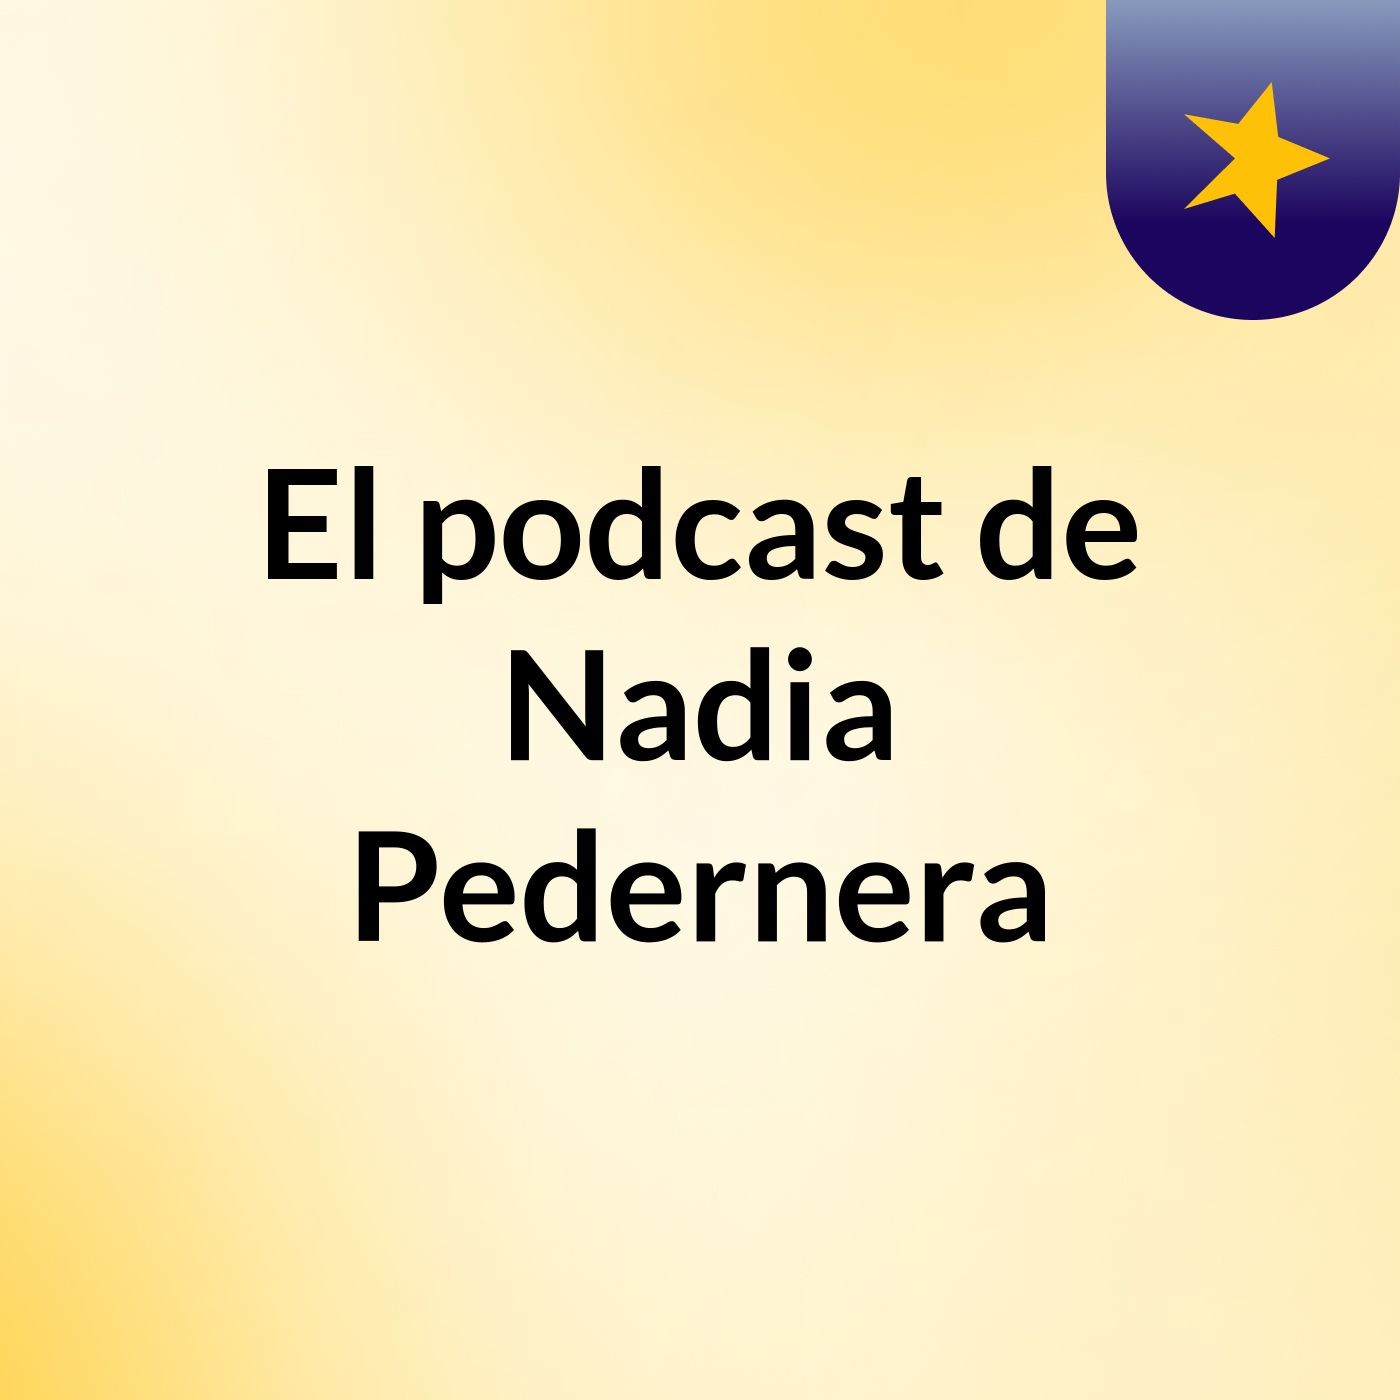 Episodio 29 - El podcast de Nadia Pedernera